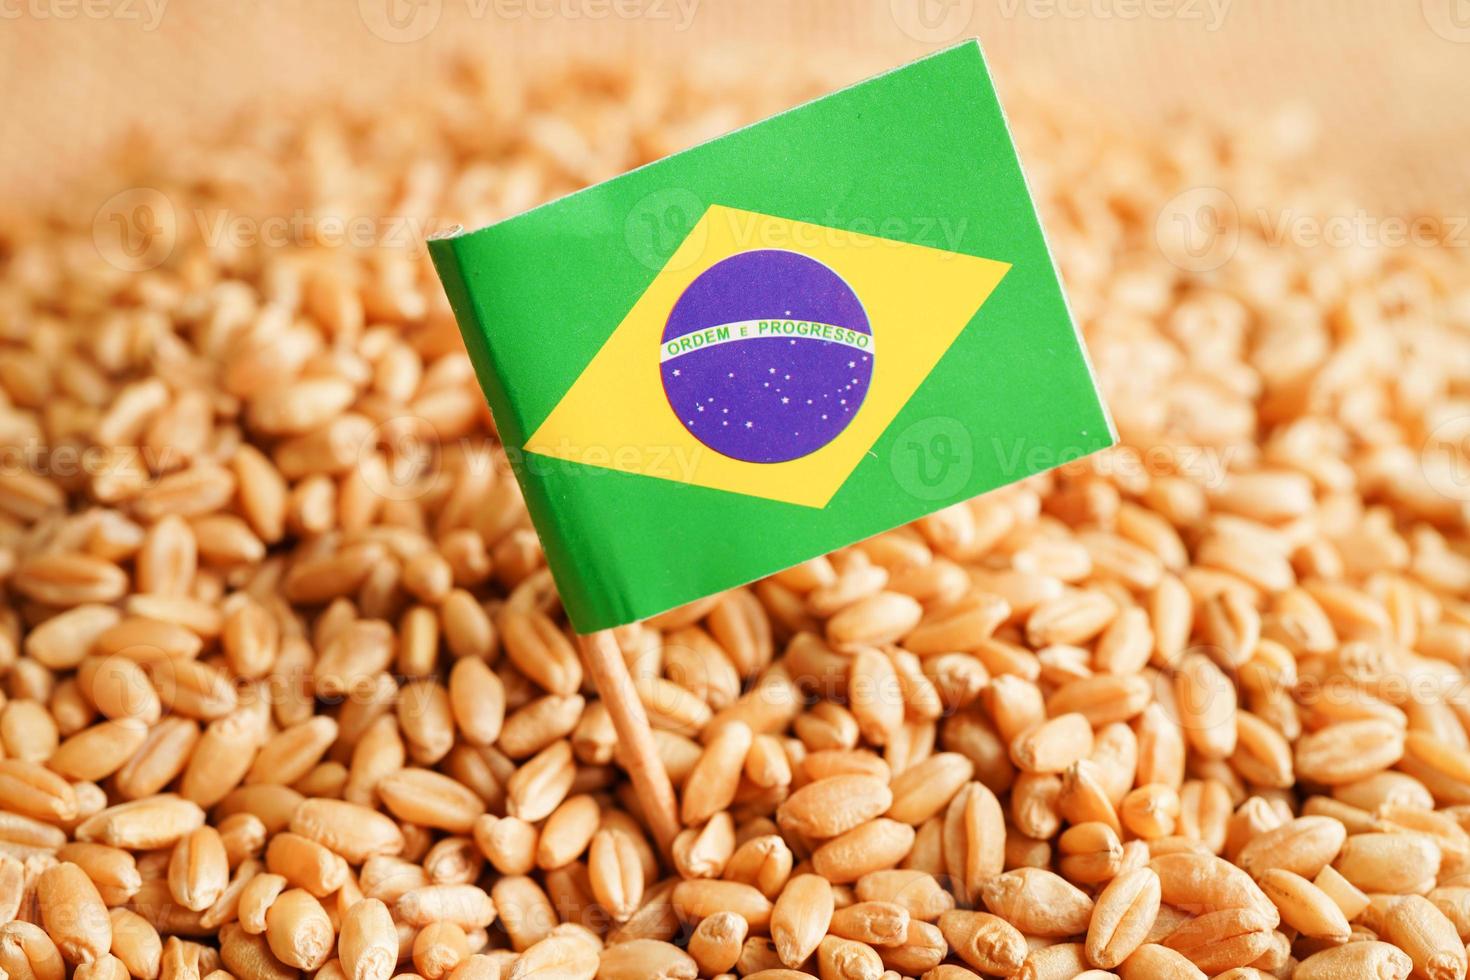 Brasilien på spannmålsvete, handelsexport och ekonomikoncept. foto